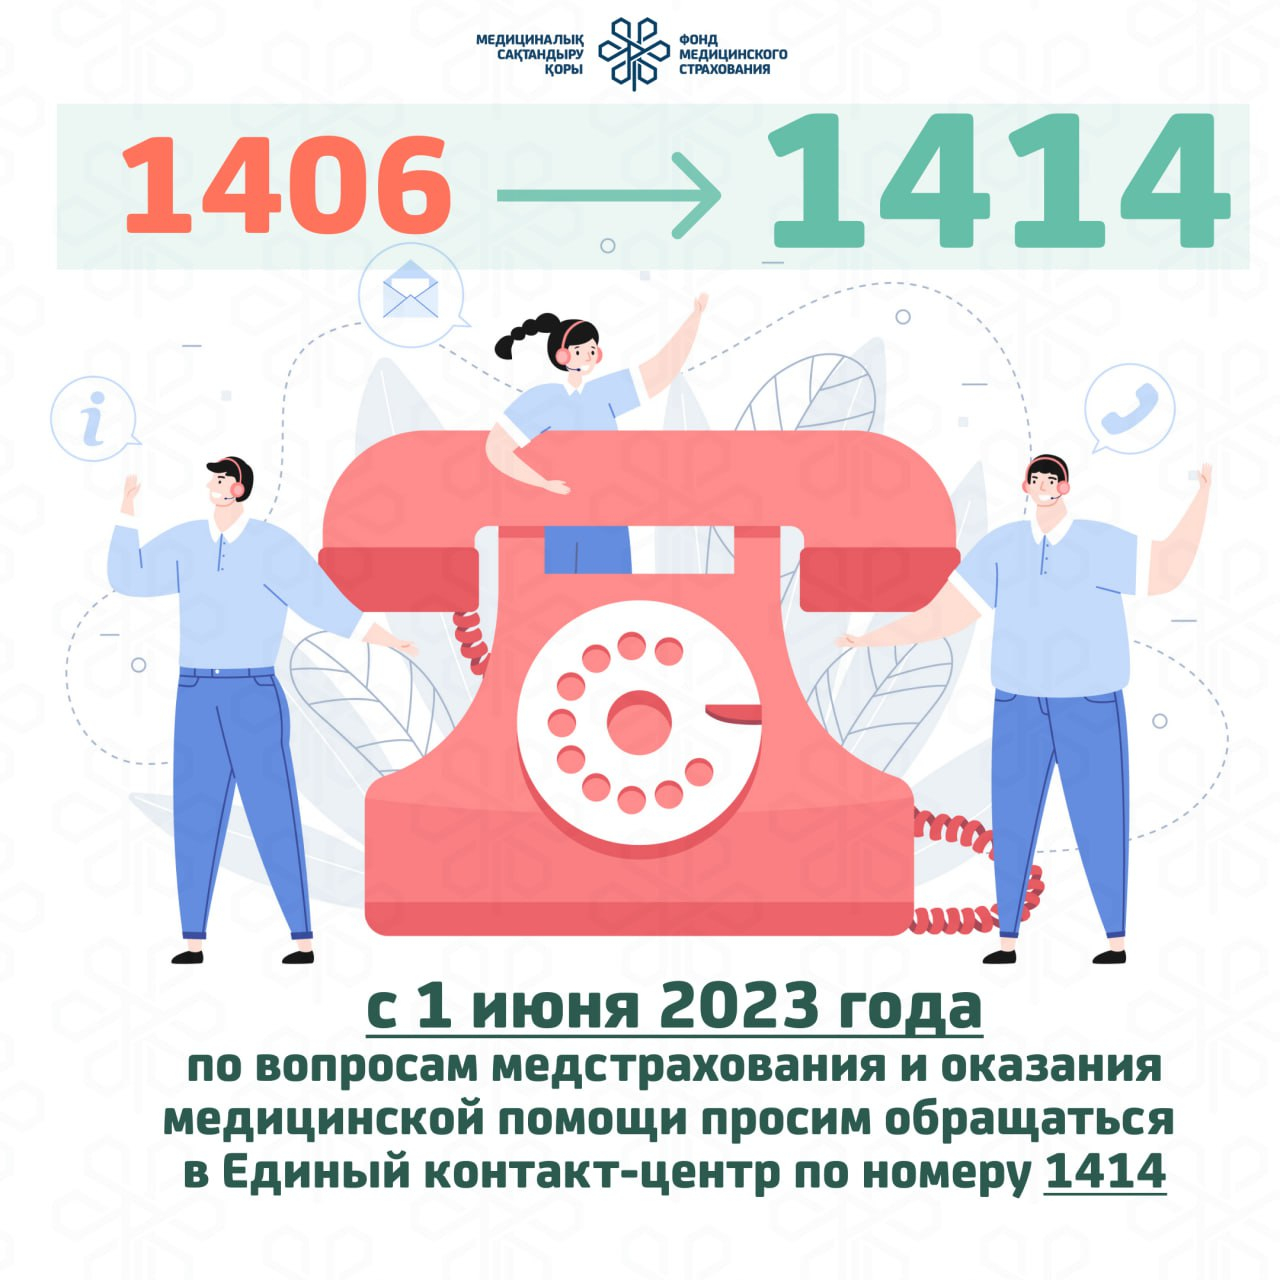 1 июня 2023 года по вопросам медстрахования и оказания медицинской помощи просим обращаться в Единый контакт -центр по номеру 1414